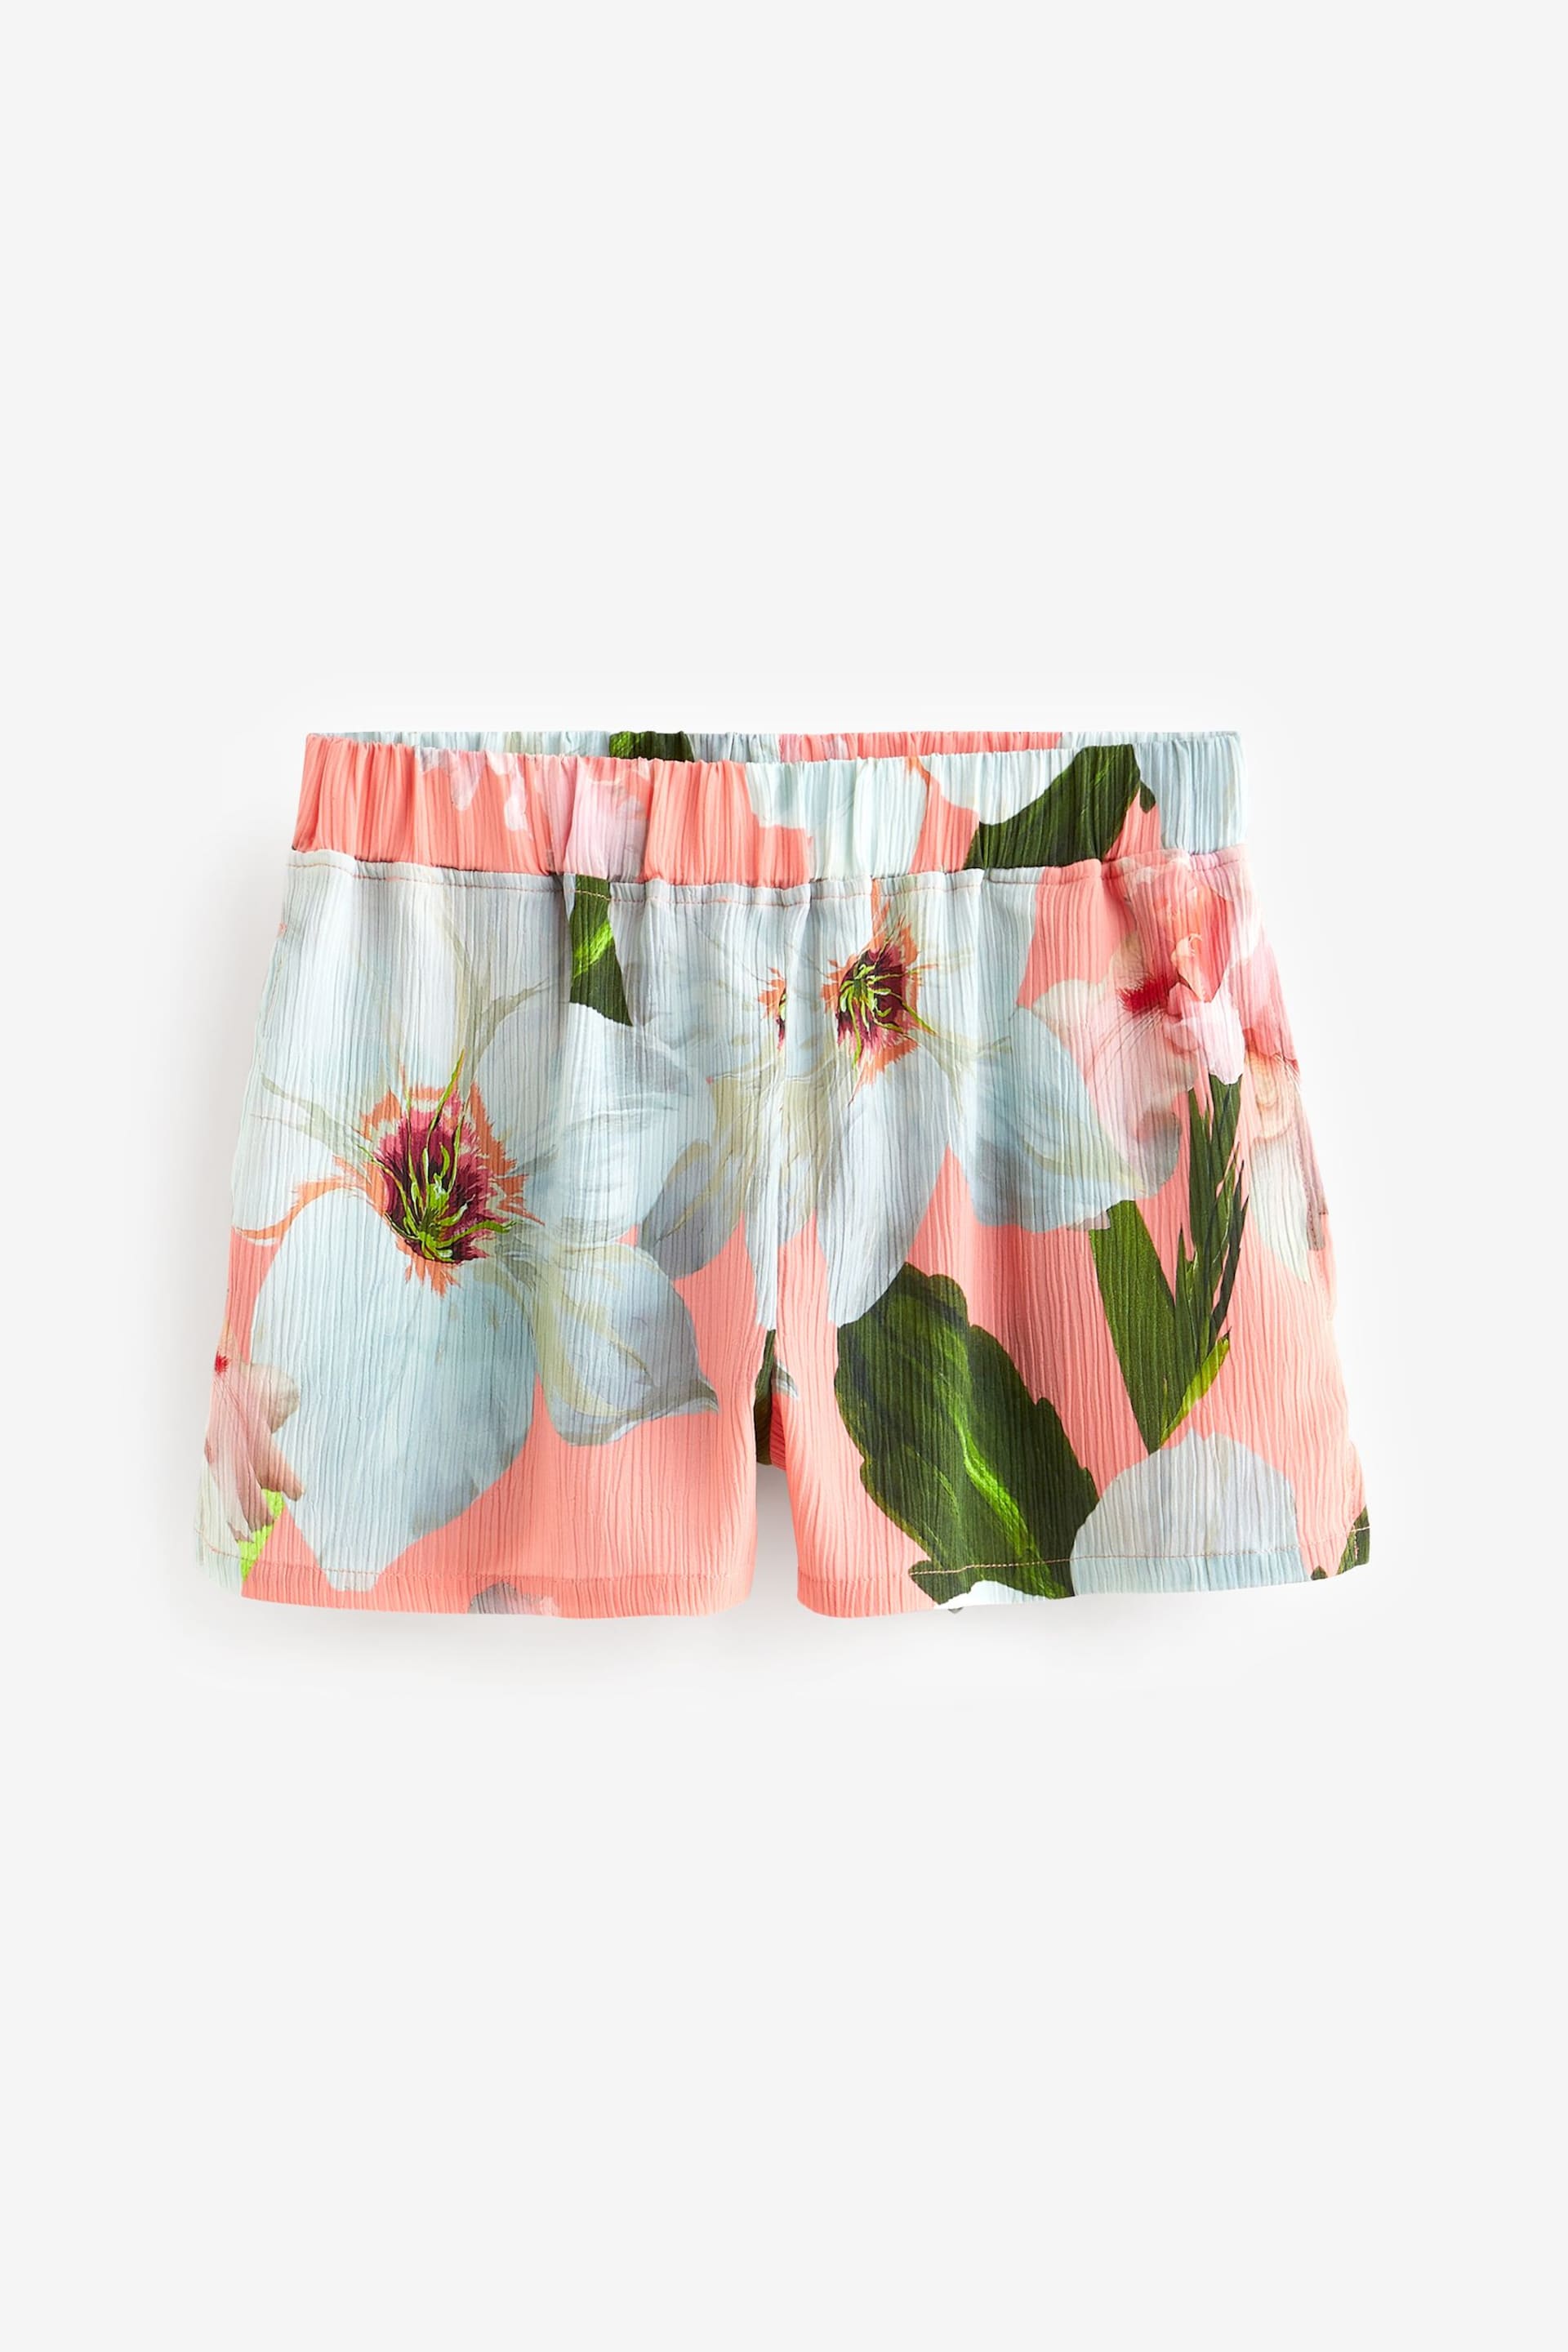 B by Ted Baker Pink Floral Crinkle Short Pyjamas Set - Image 9 of 10